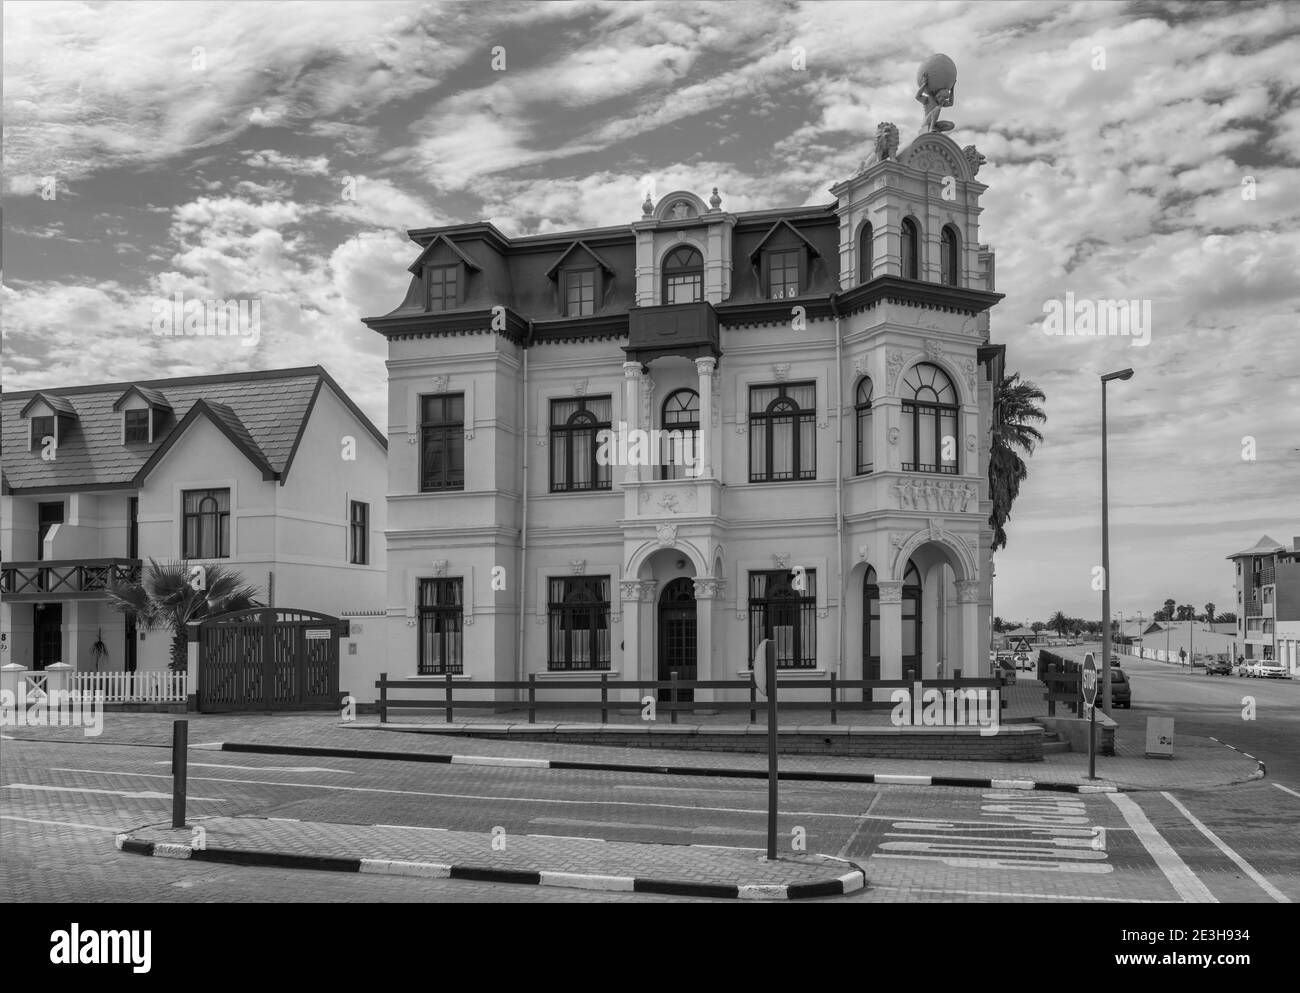 Antico edificio coloniale tedesco in bianco e nero, Swakopmund, Namibia Foto Stock